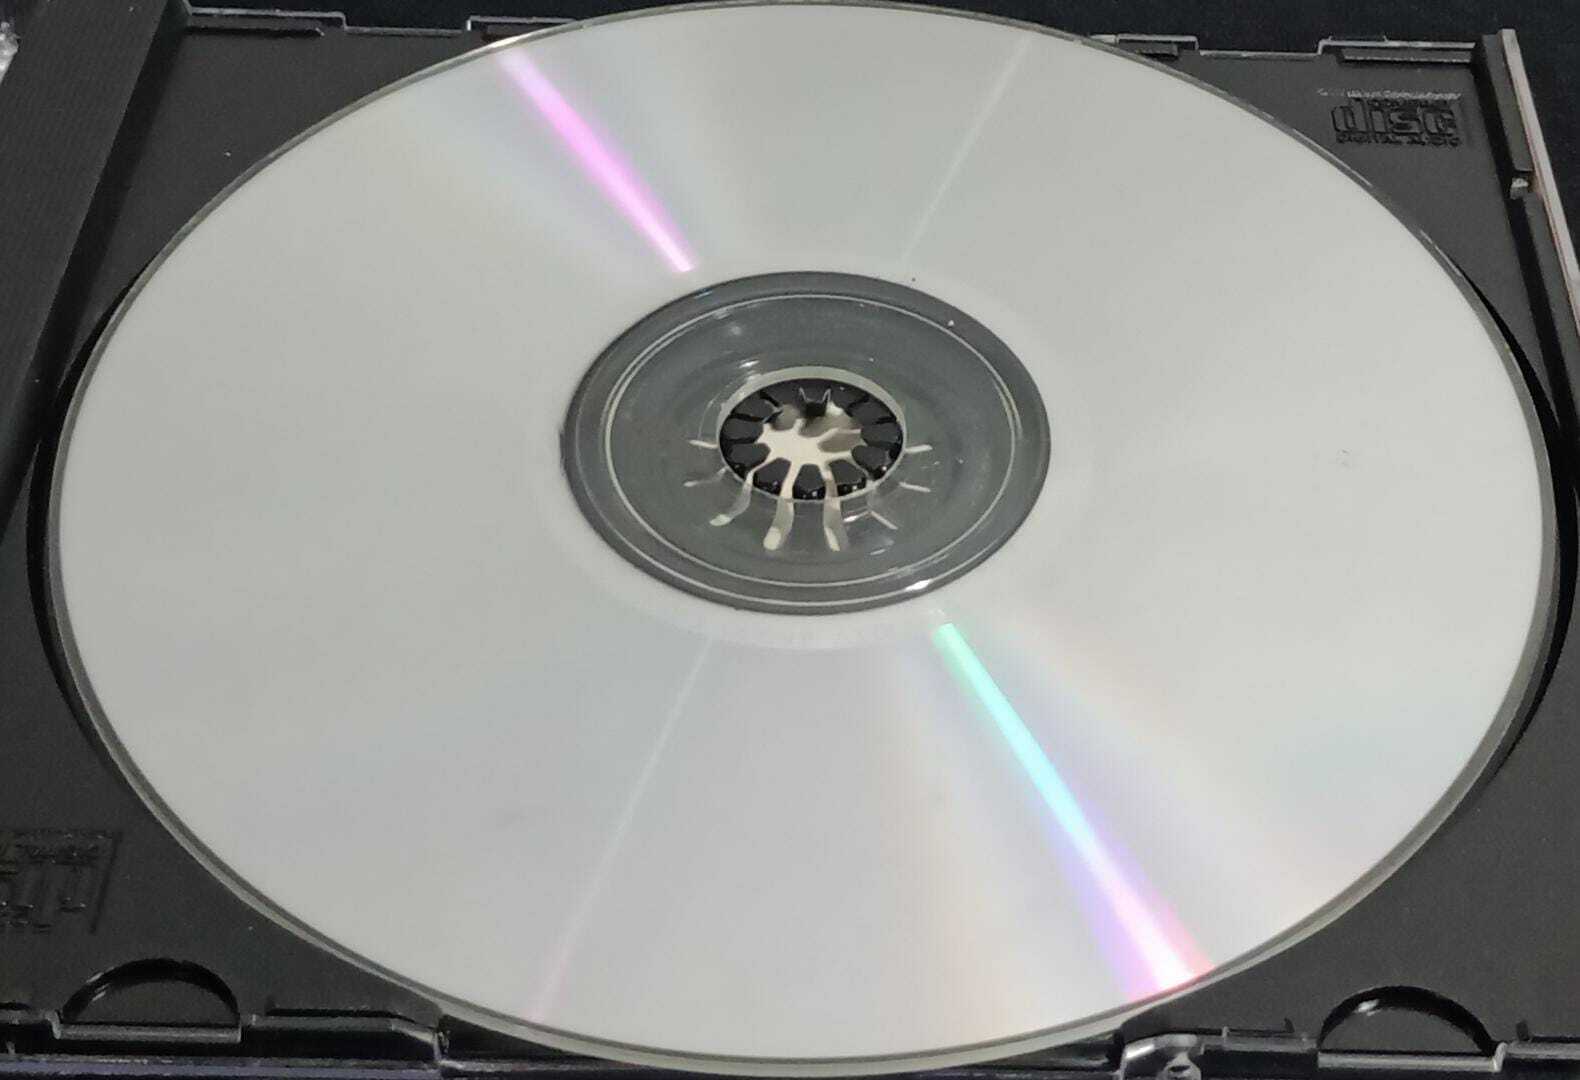 CD - Whitesnake - Greatest Hits